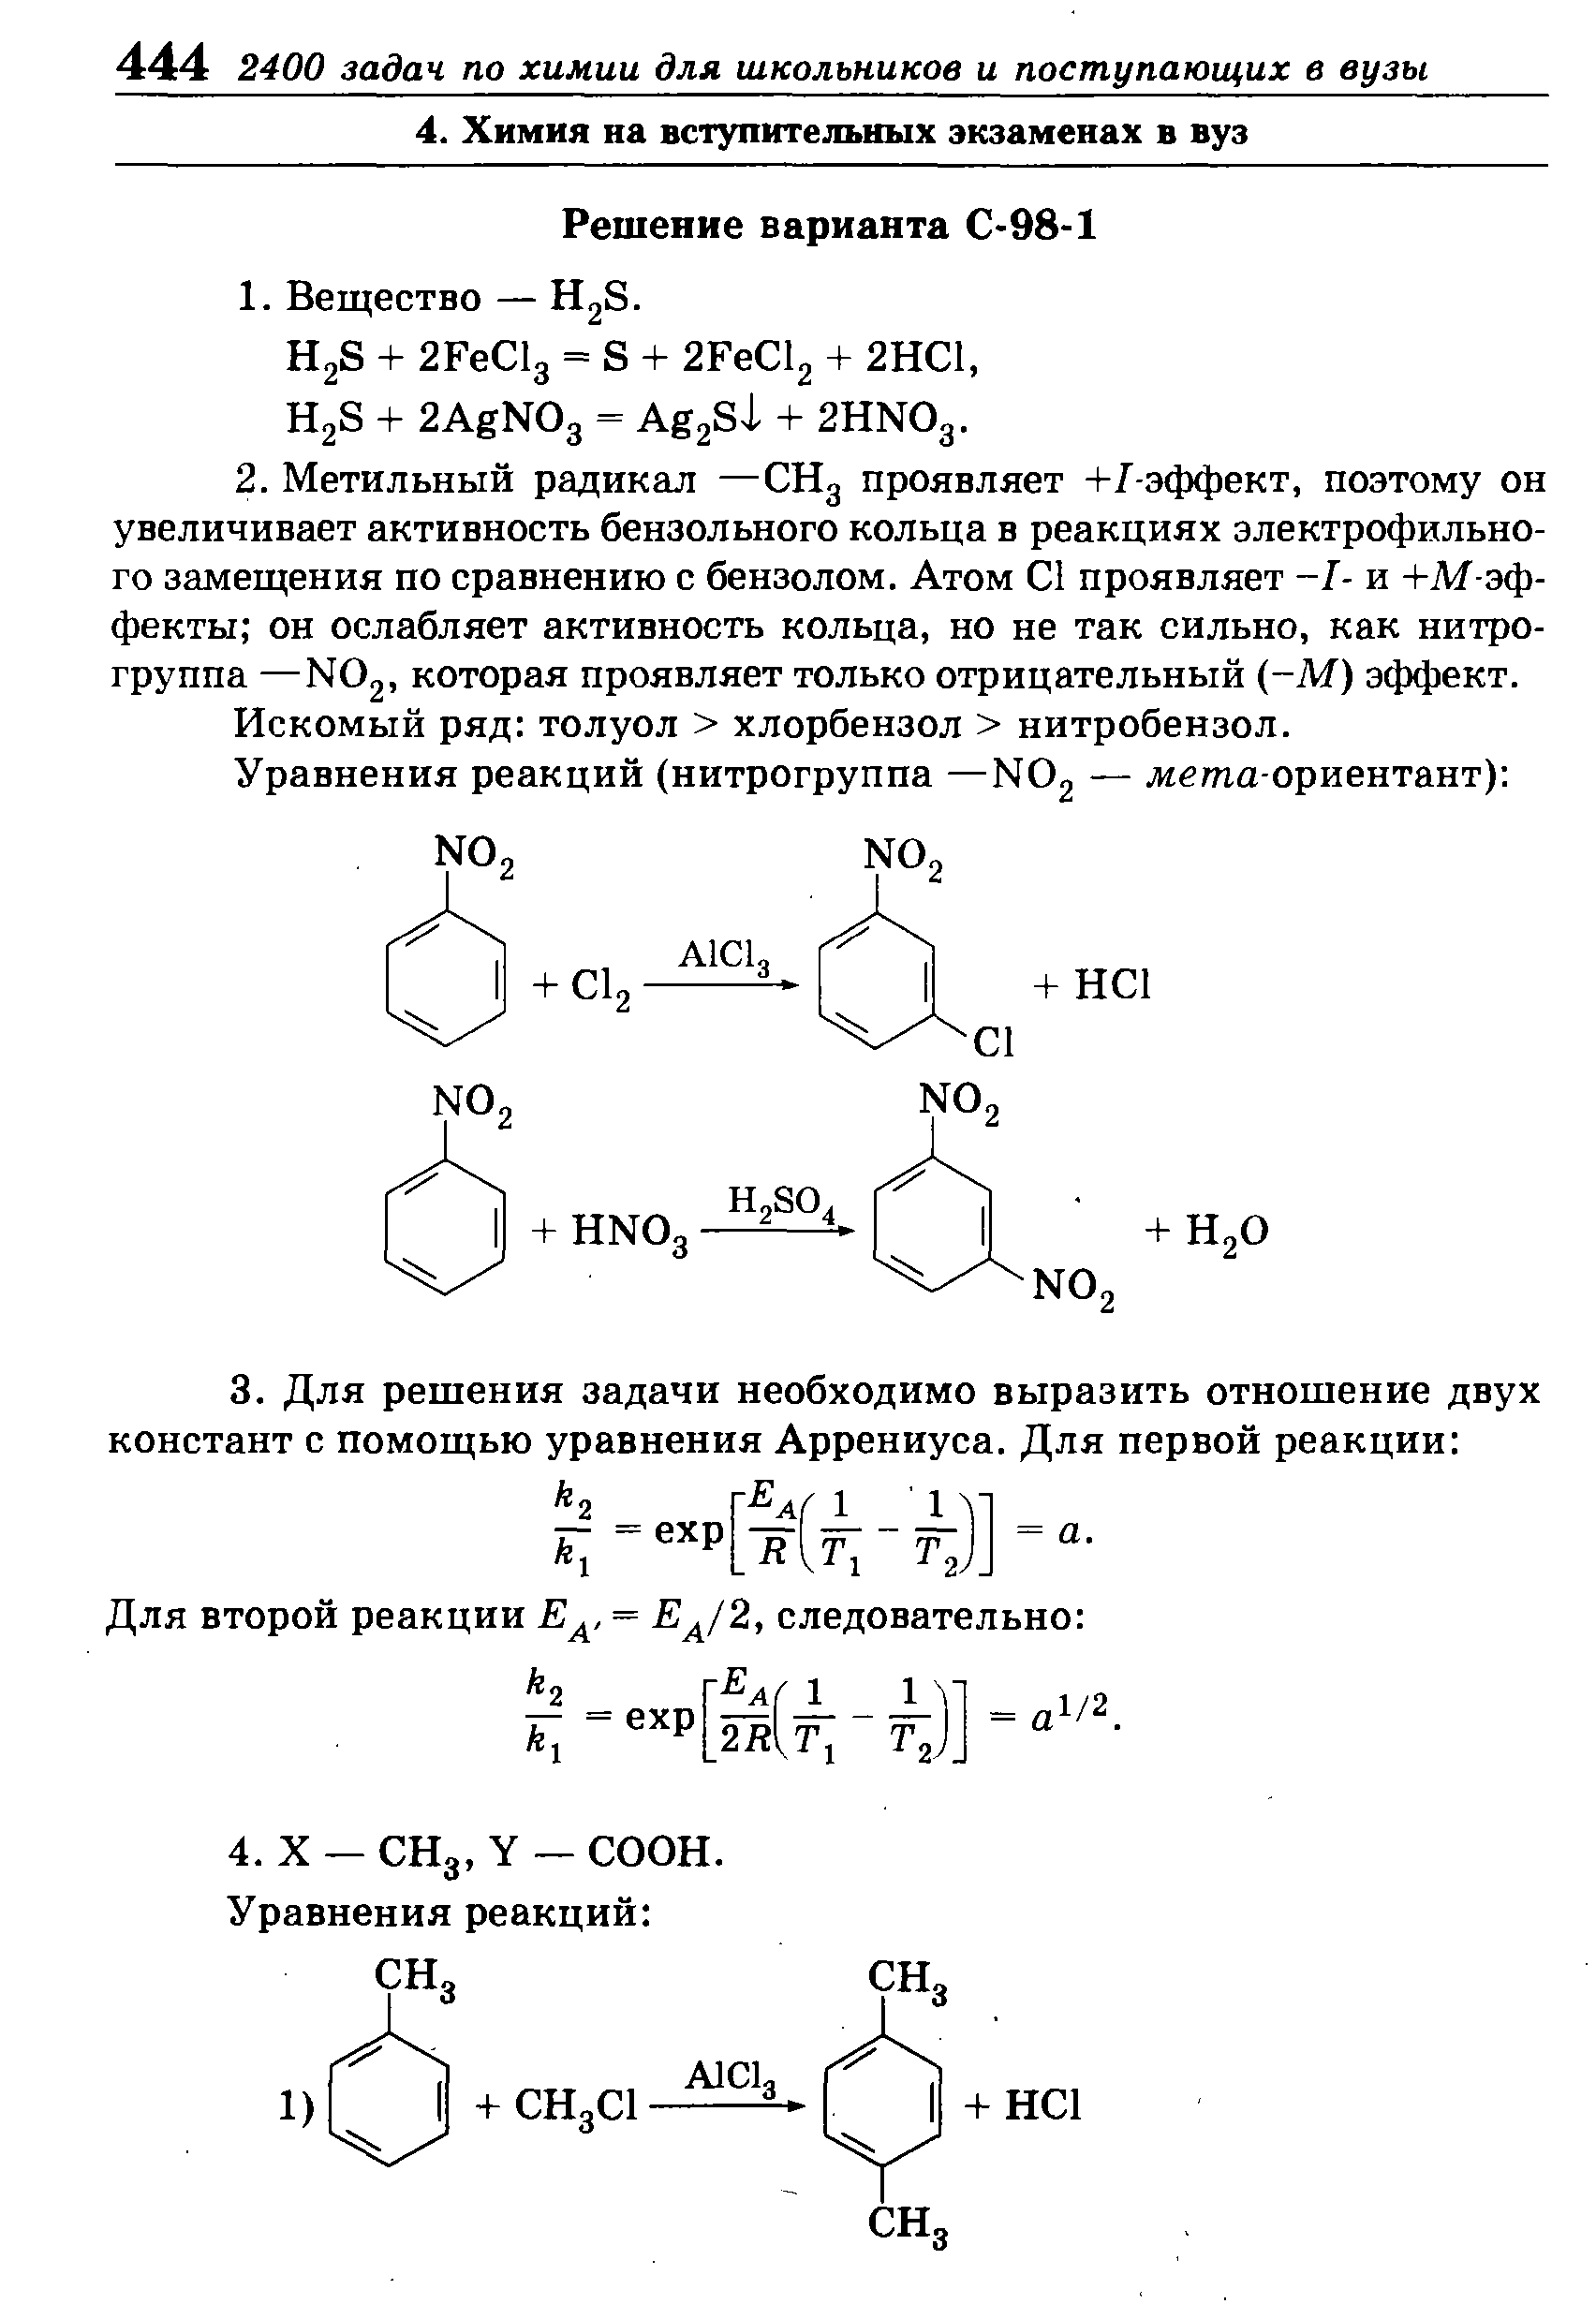 Искомый ряд толуол хлорбензол нитробензол.